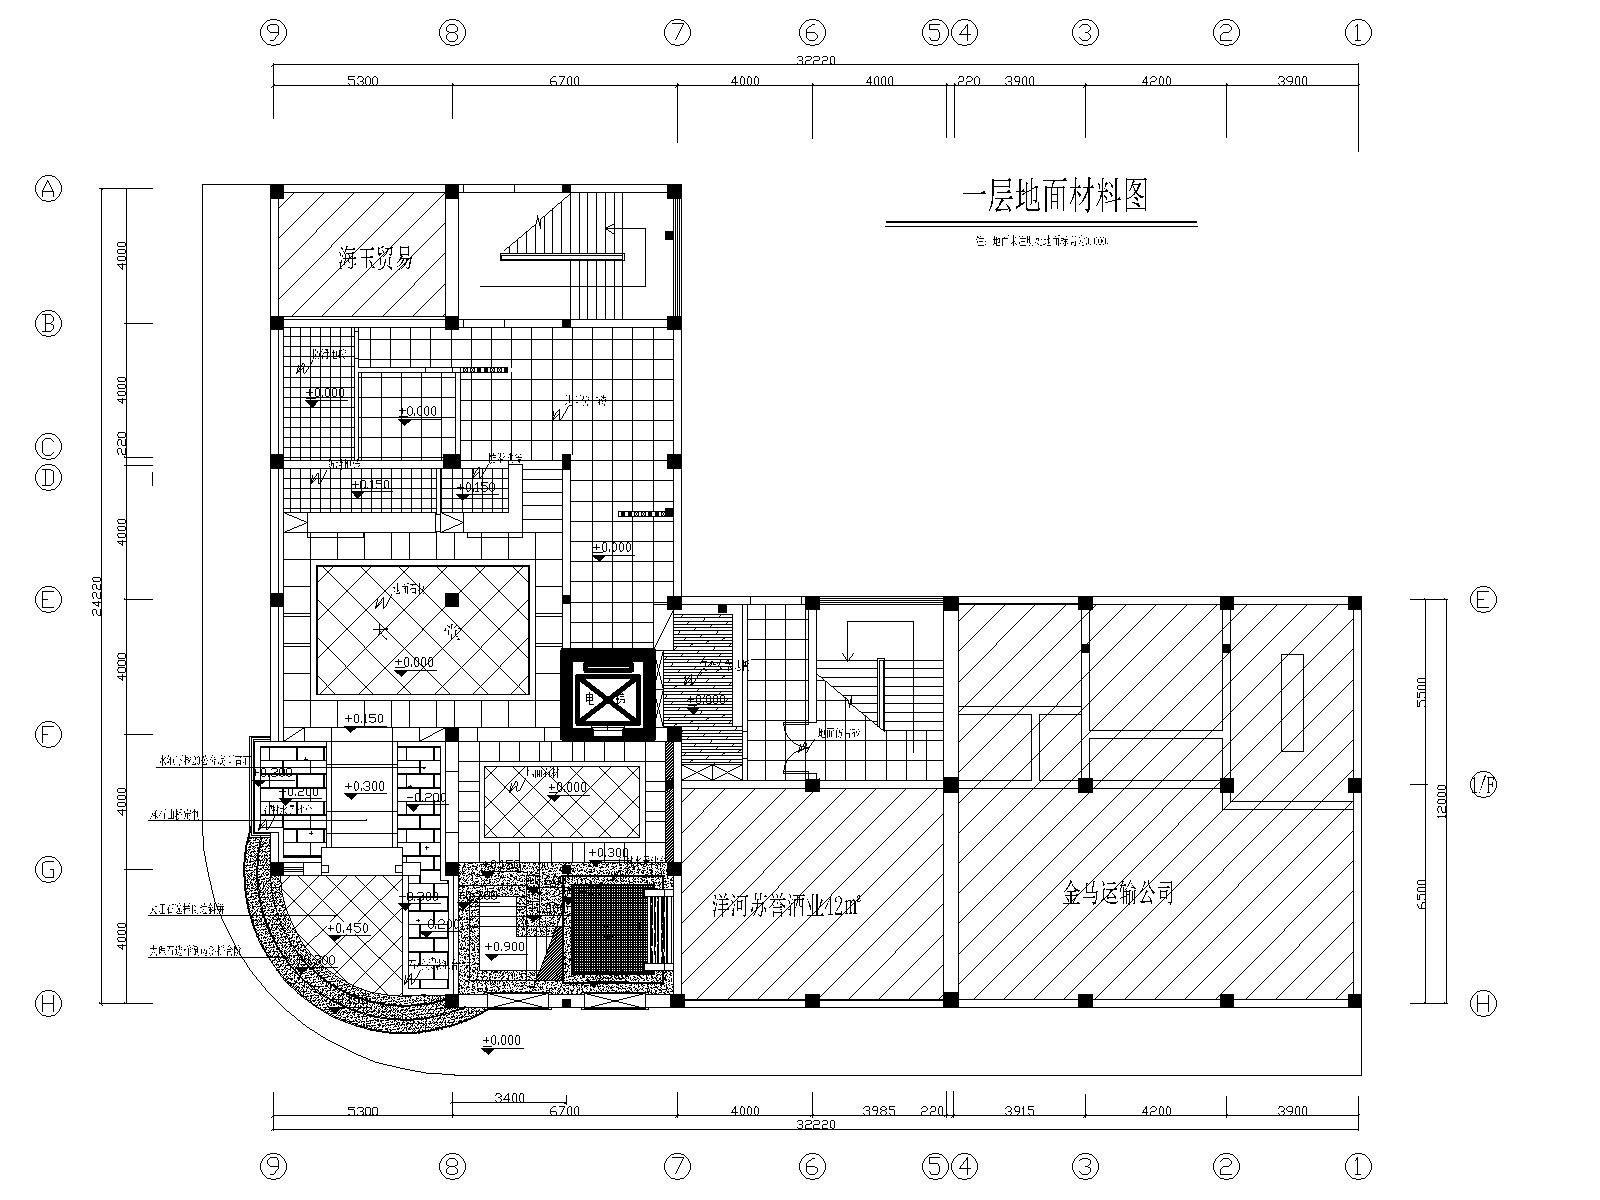 湛江足浴店设计施工图+效果图-04一层地面铺装图